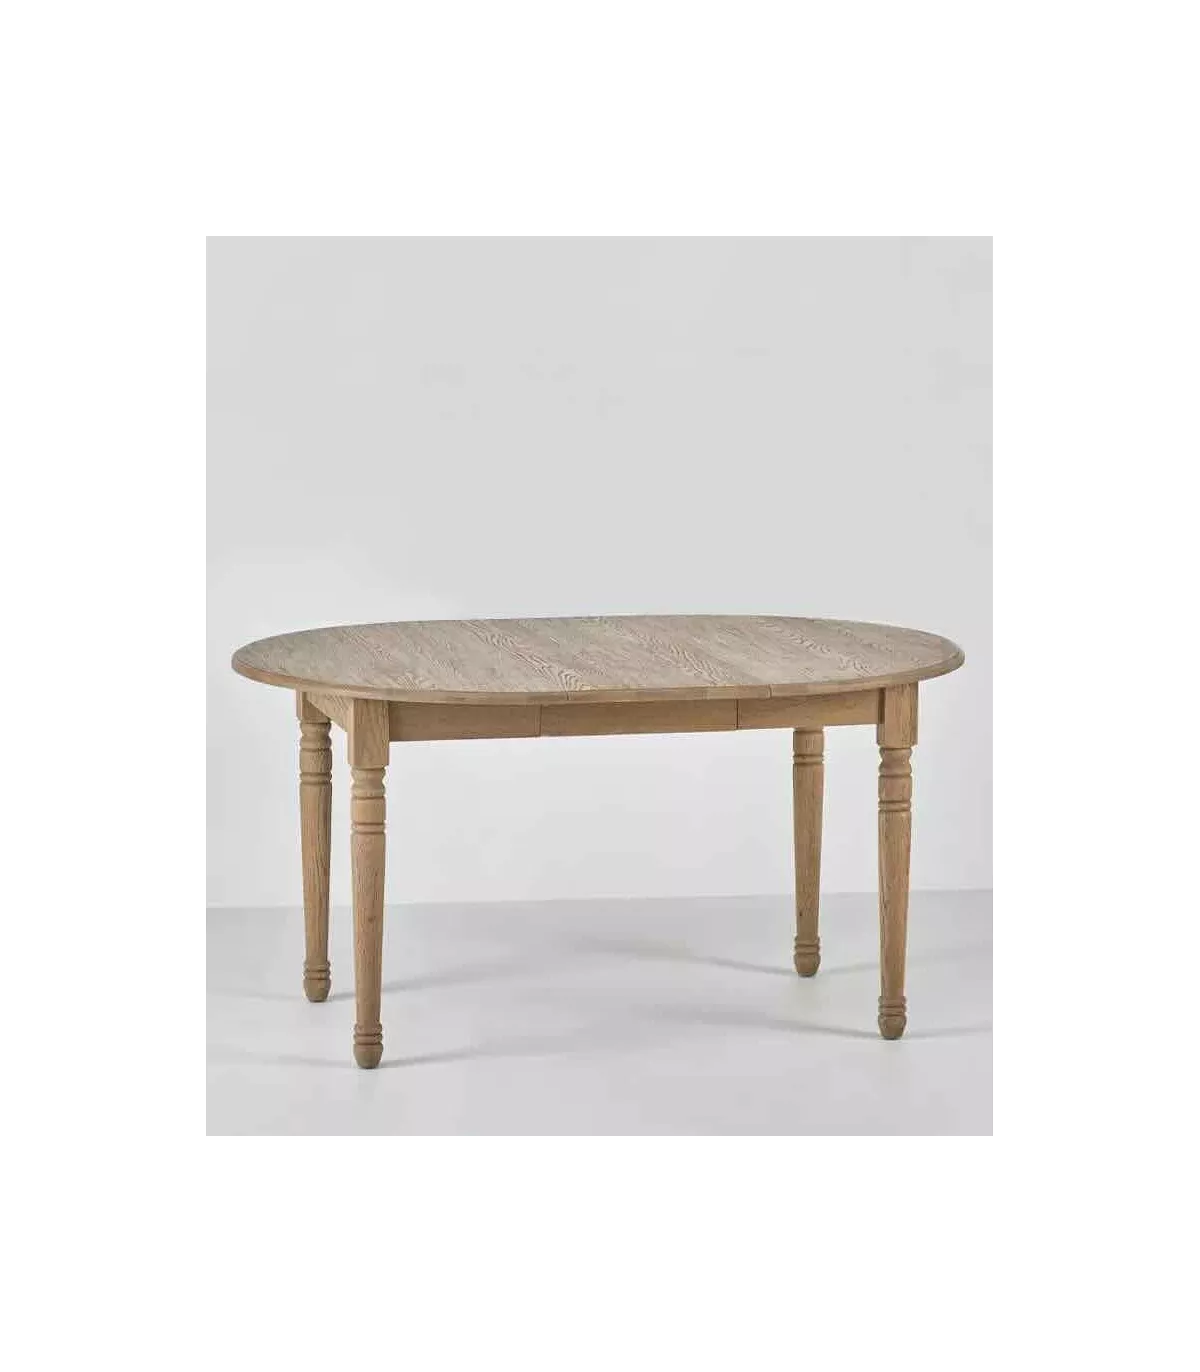 Mesa redonda extensible de madera maciza de roble o haya, diametro